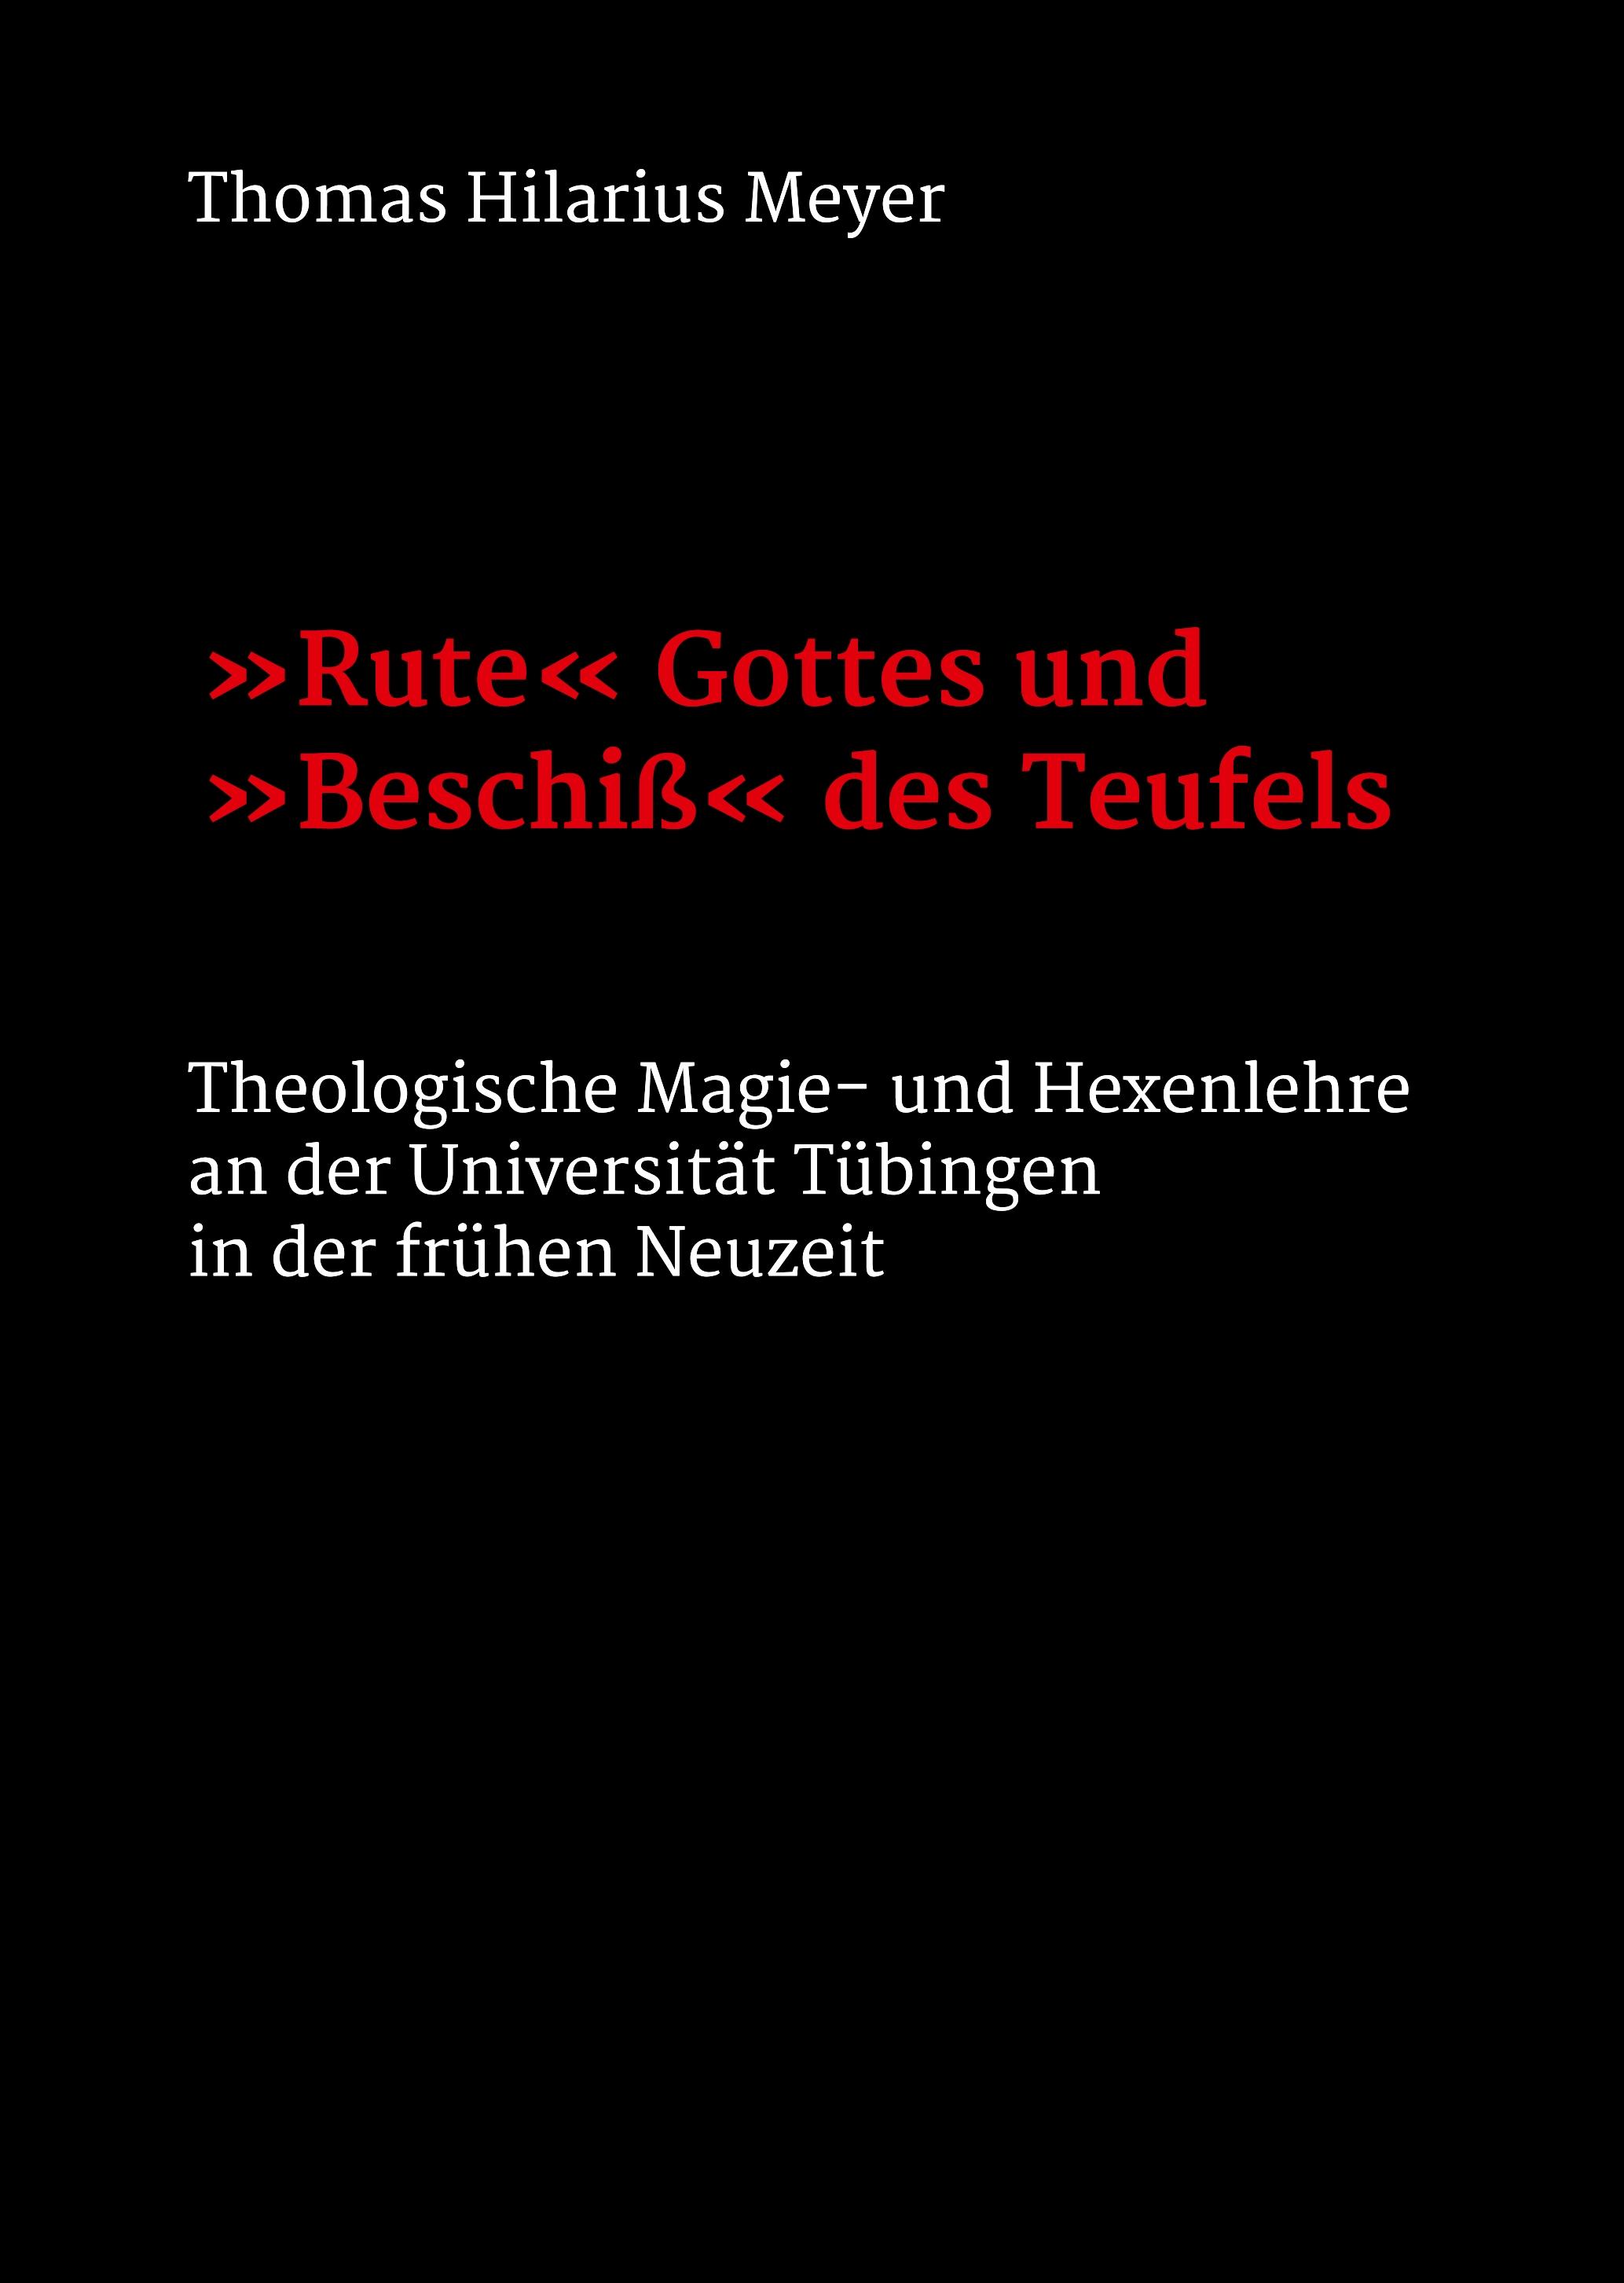 Rute\\ Gottes und \\ Beschiss\\ des Teuf - Meyer, Thomas Hilarius